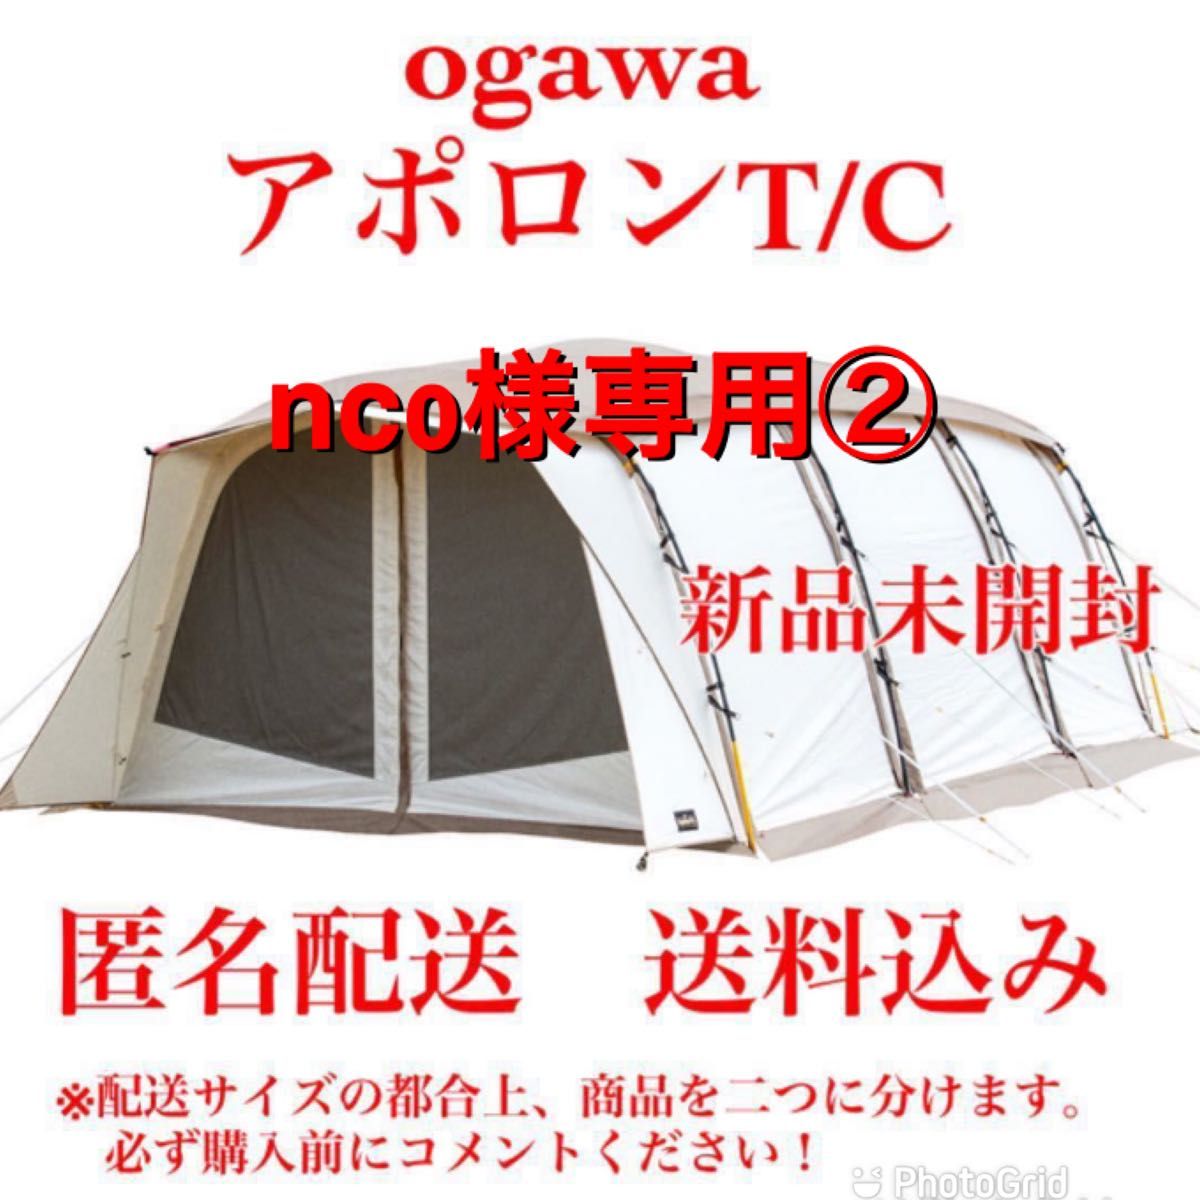 新品未開封 ogawaアポロンT/C 2789② アウトドア、キャンプ、登山 